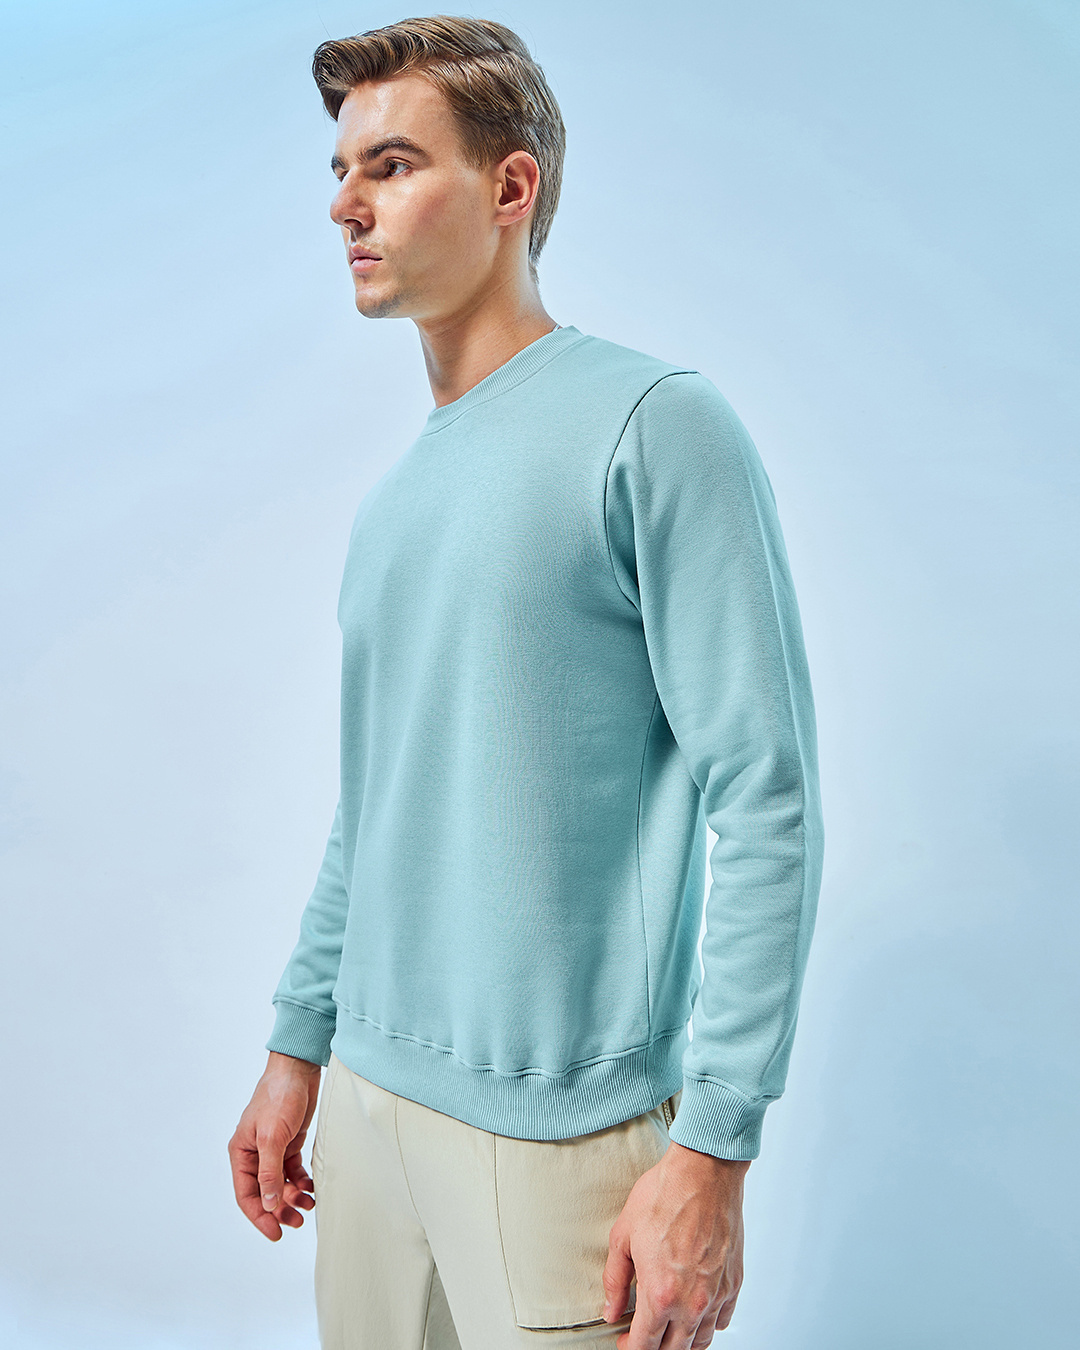 Buy Men's Green Sweatshirt Online at Bewakoof